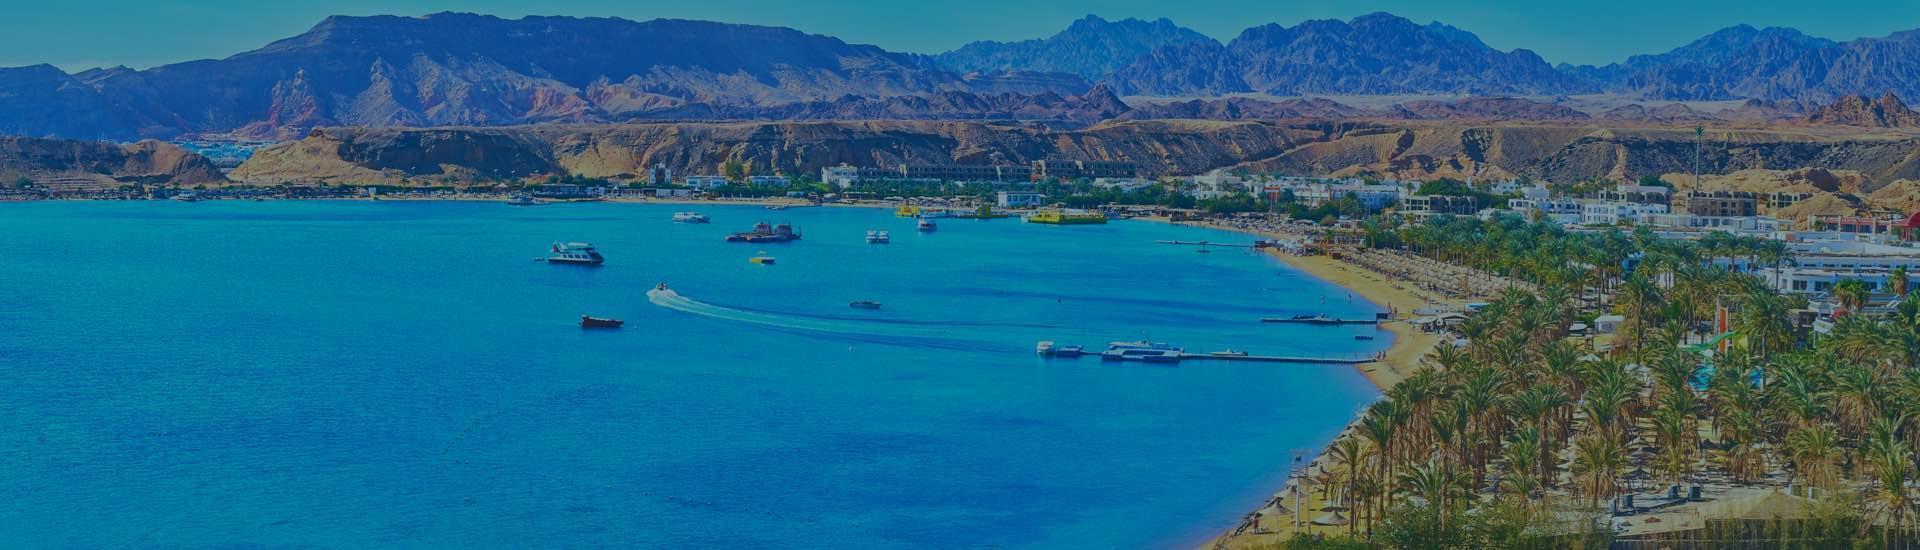 Book Billund to Sharm El Sheikh Flights